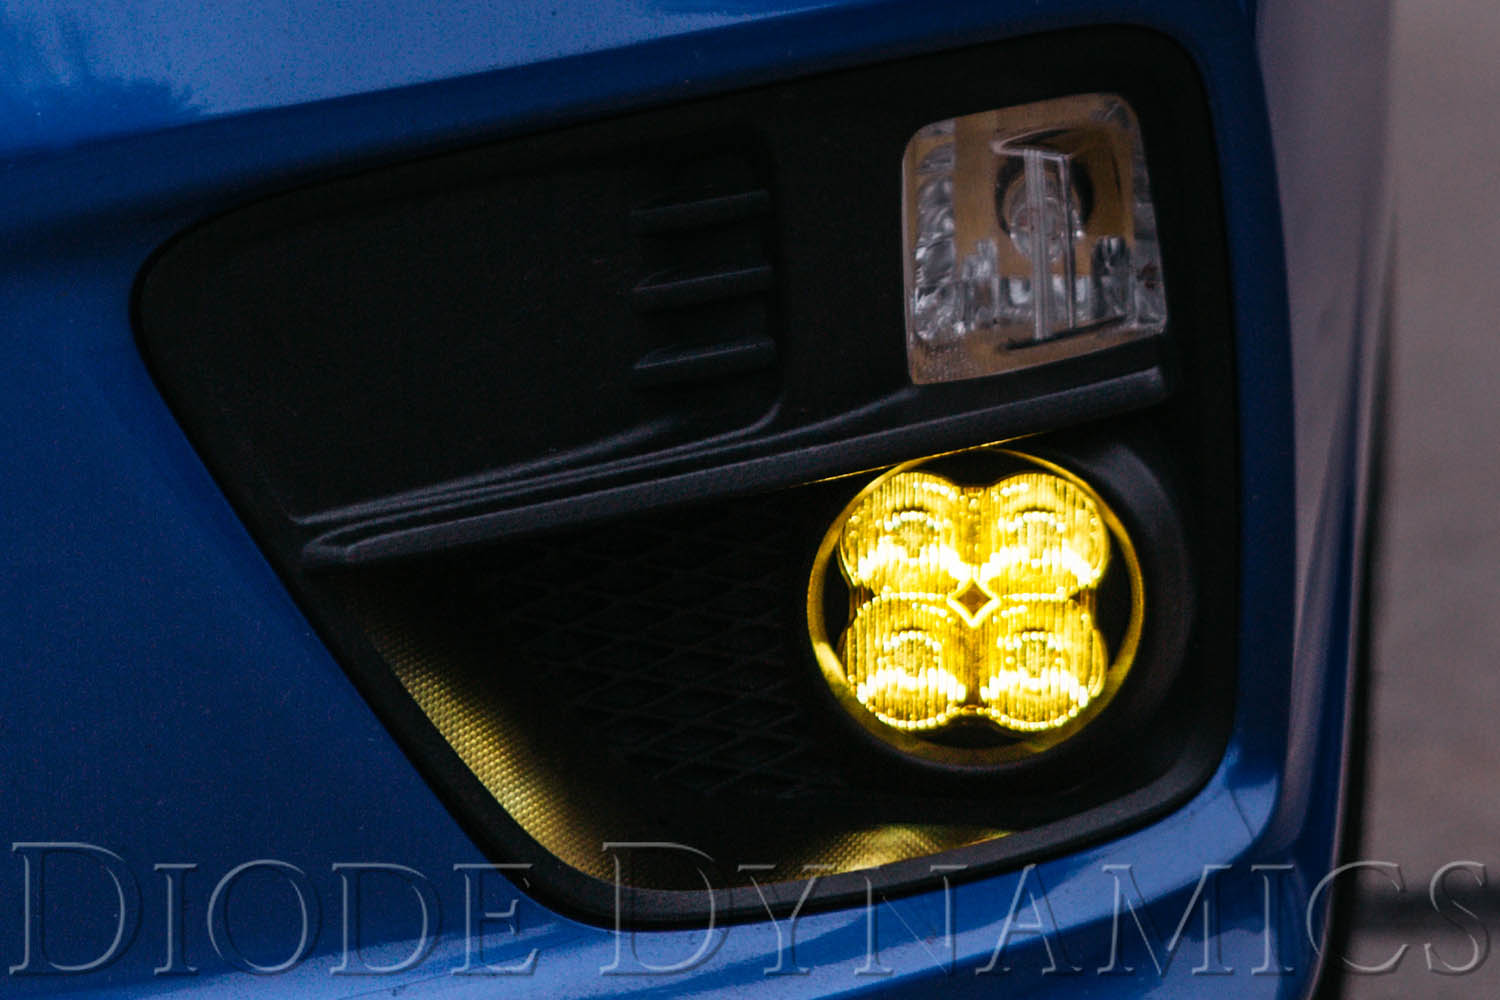 SS3 LED Fog Light Kit for 2013-2016 Honda CR-Z Yellow SAE Fog Sport Diode Dynamics